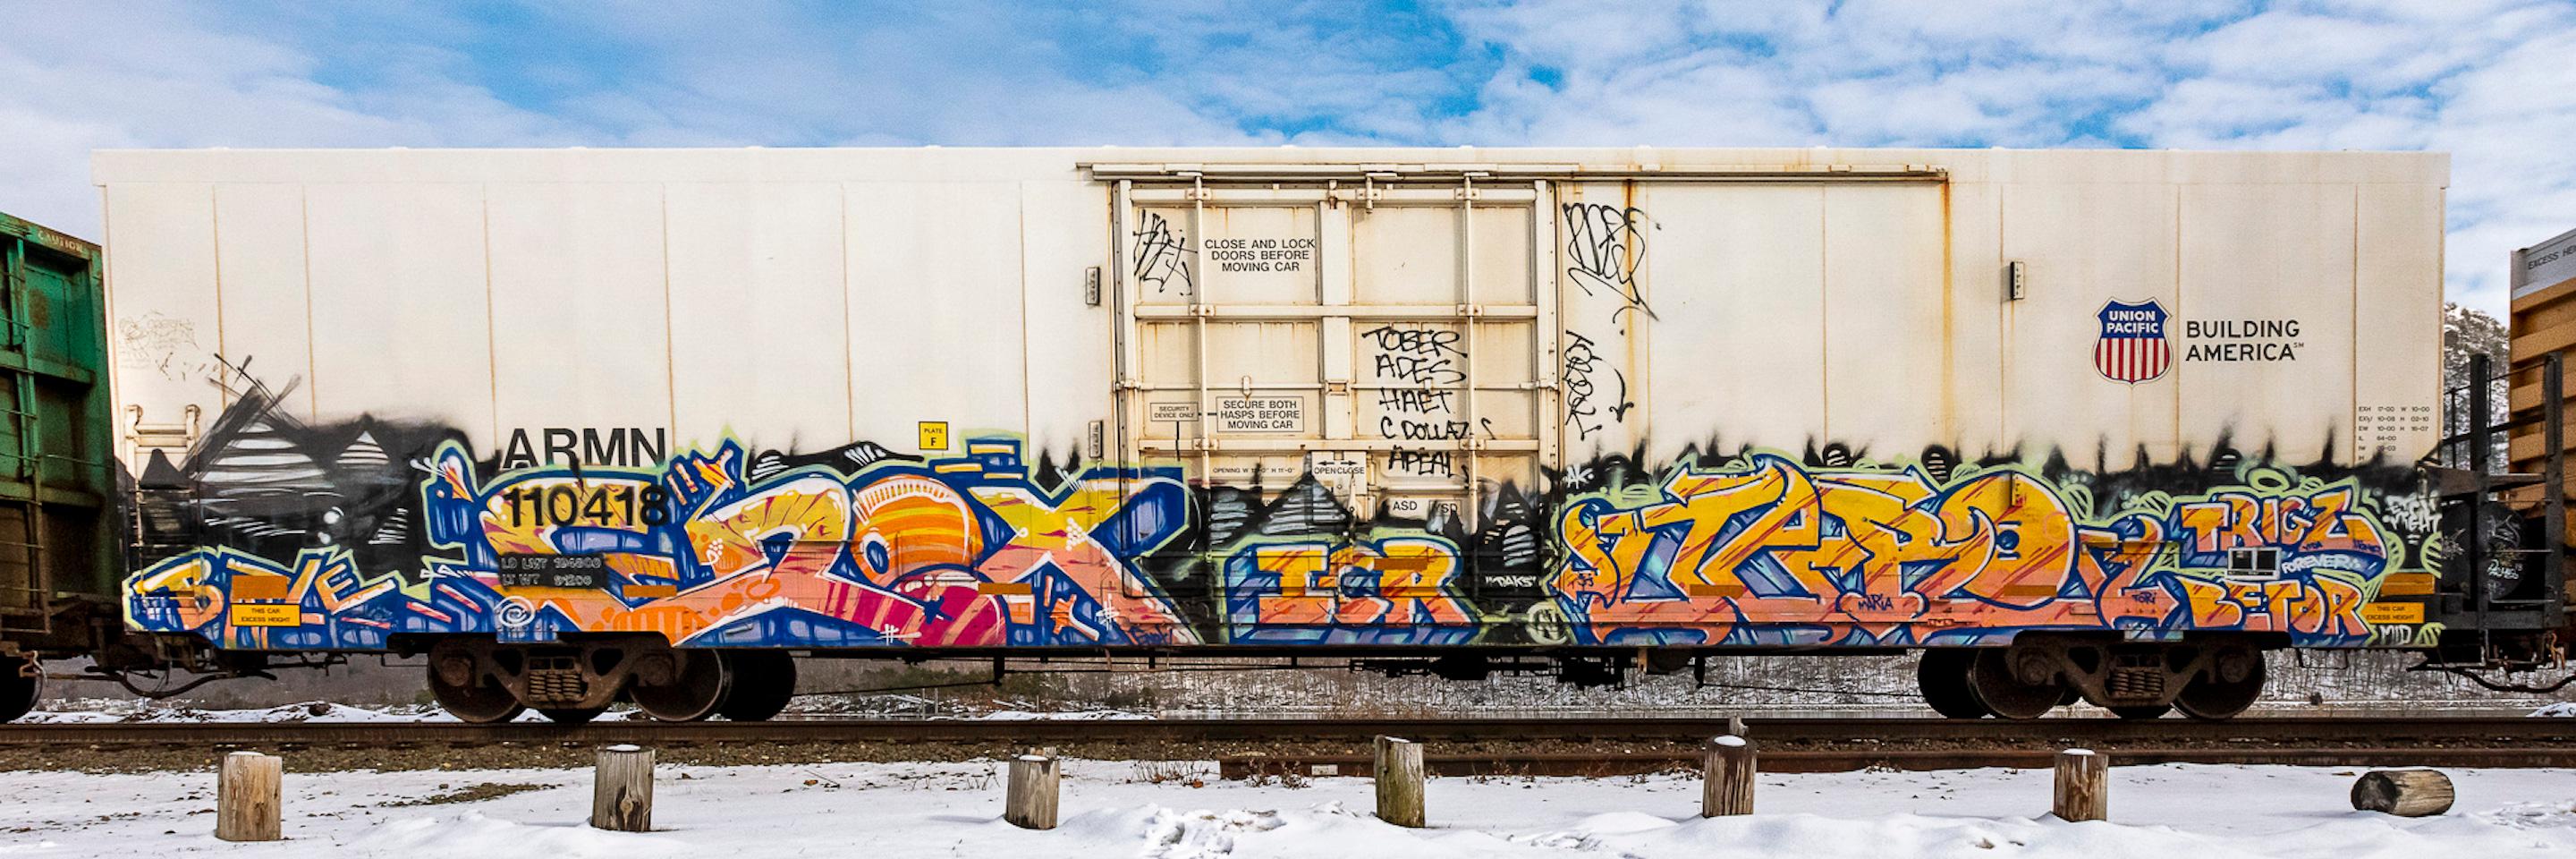 Color Photograph Stephen Mallon - "Armn 110418" Graffiti peint voiture de train de chemin de fer, photo en édition limitée 10"x30"